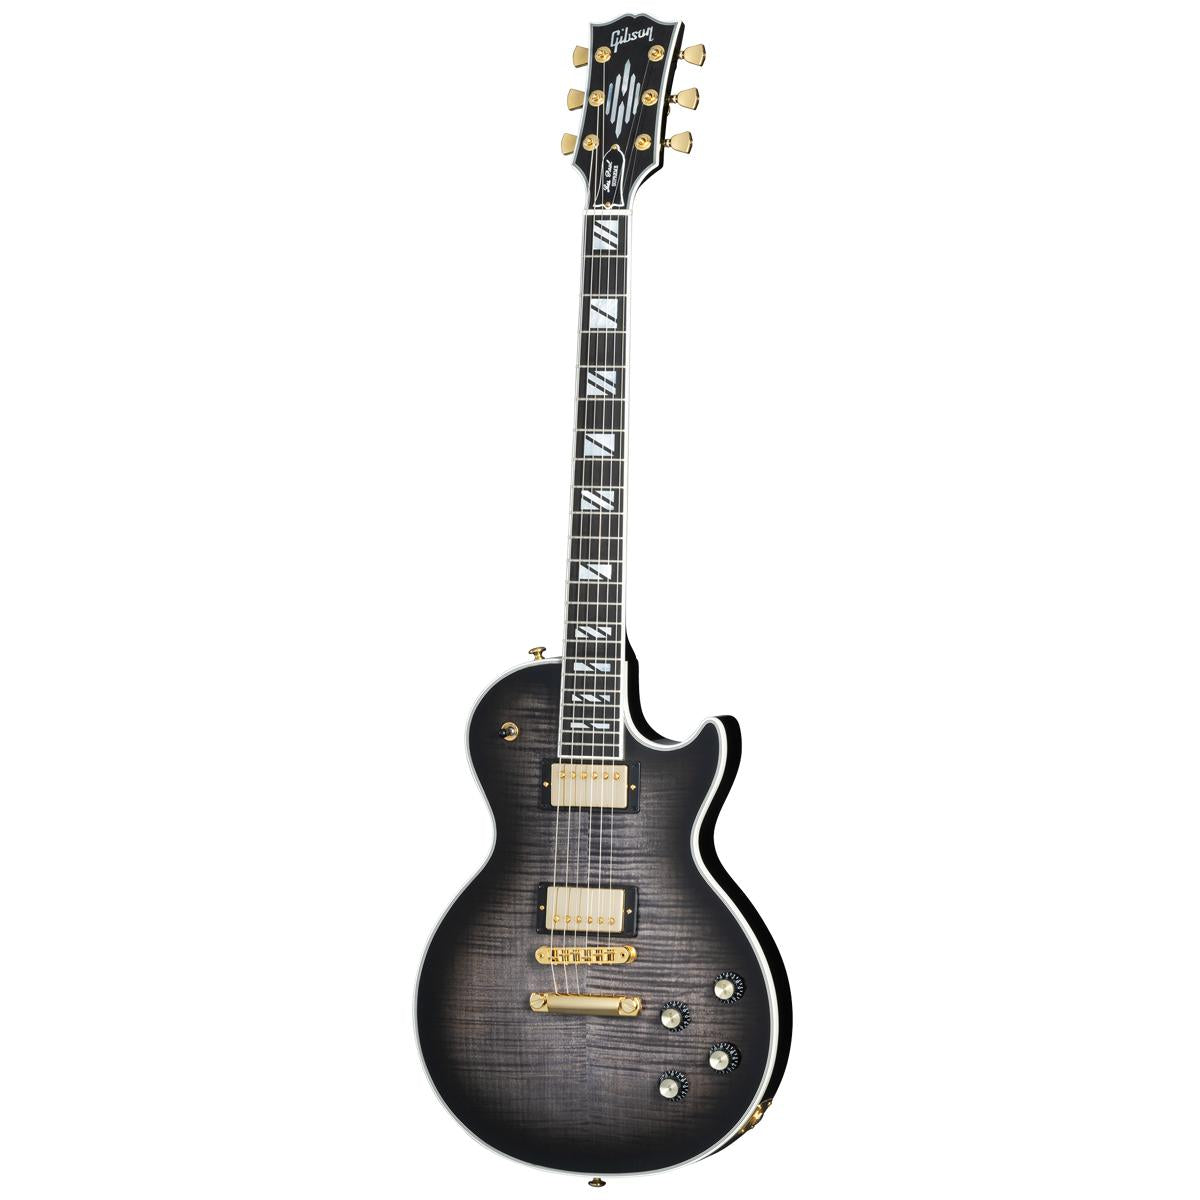 https://www.belfieldmusic.com.au/cdn/shop/files/Gibson-Les-Paul-Supreme-LP-Electric-Guitar-Translucent-Ebony-Burst---LPSU00E2GH1-front_1200x.jpg?v=1695774271